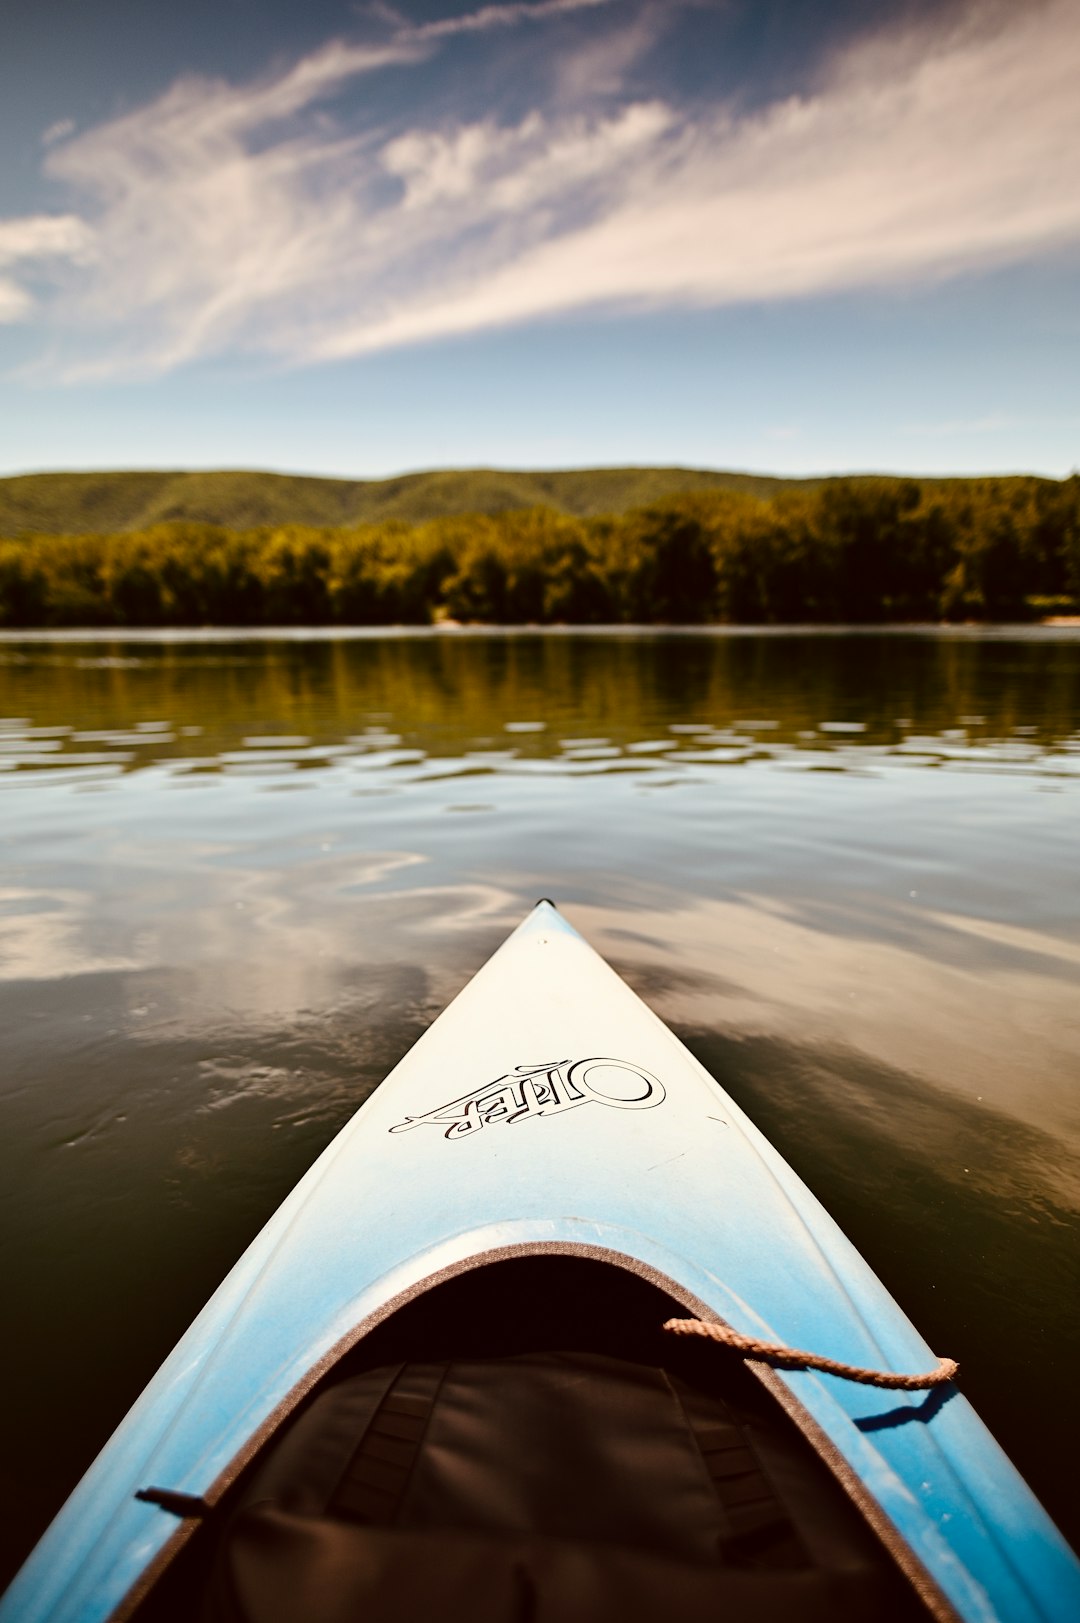 white and black kayak on lake during daytime